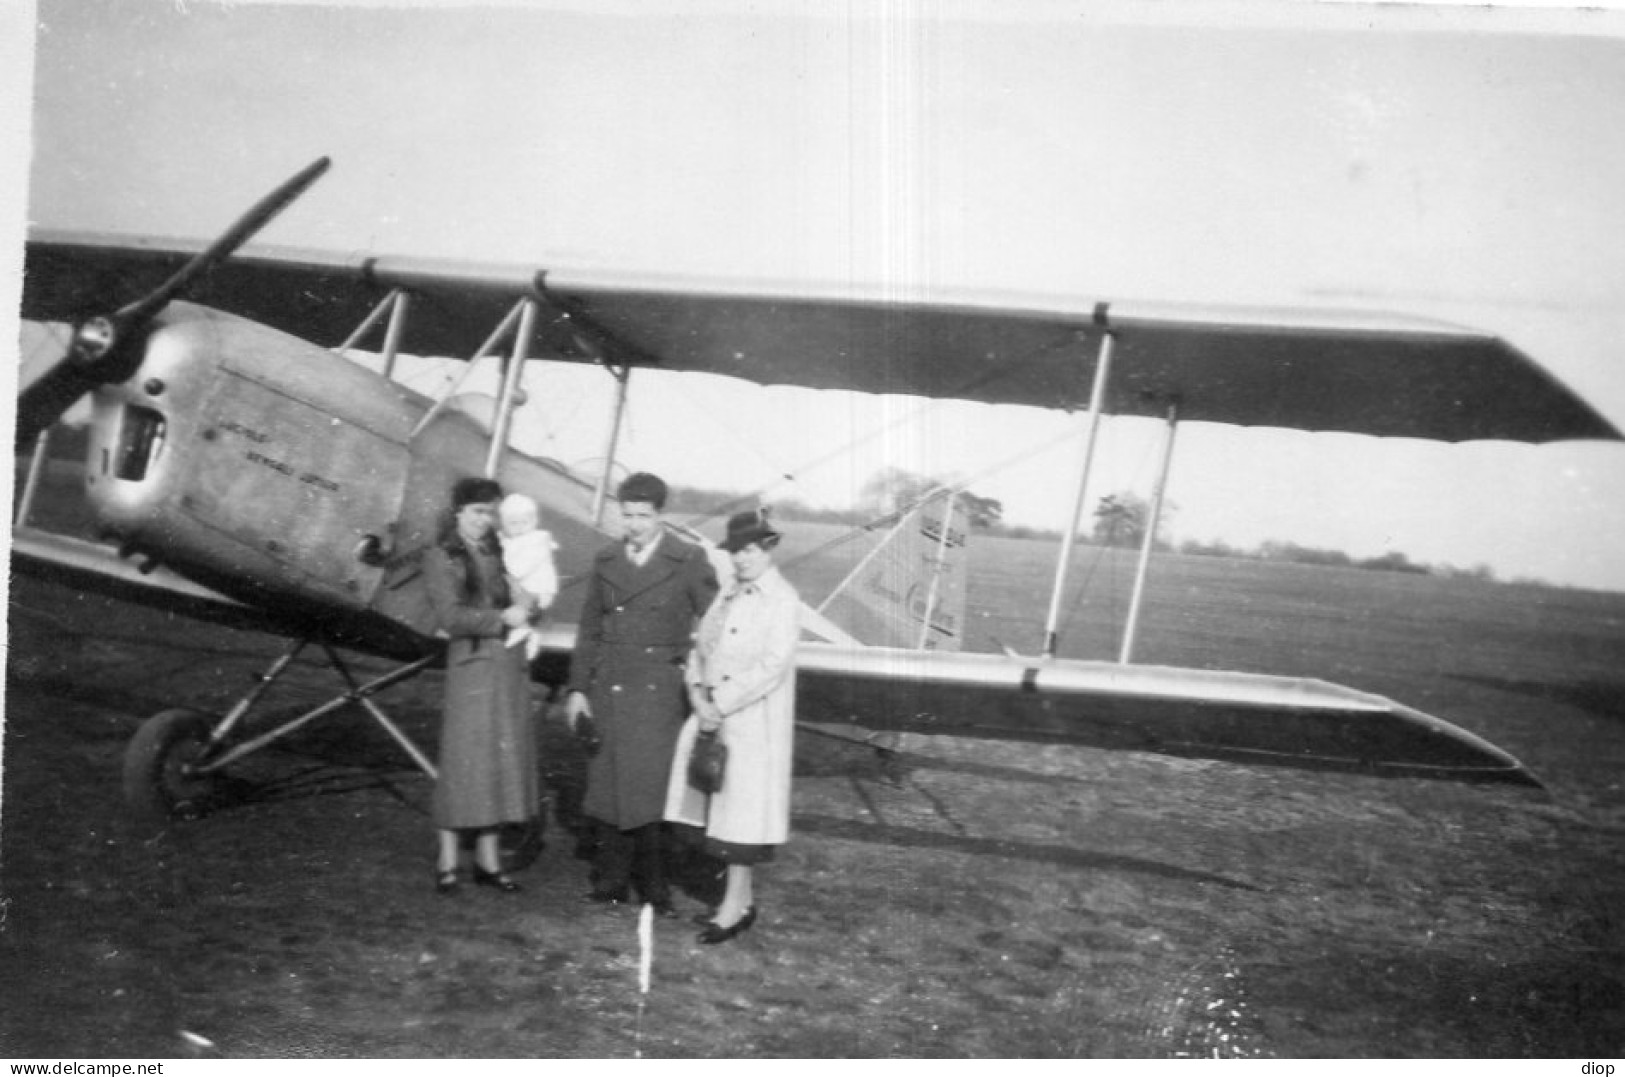 Photo Vintage Paris Snap Shop -famille Family Petit Avion Small Plane  - Aviation